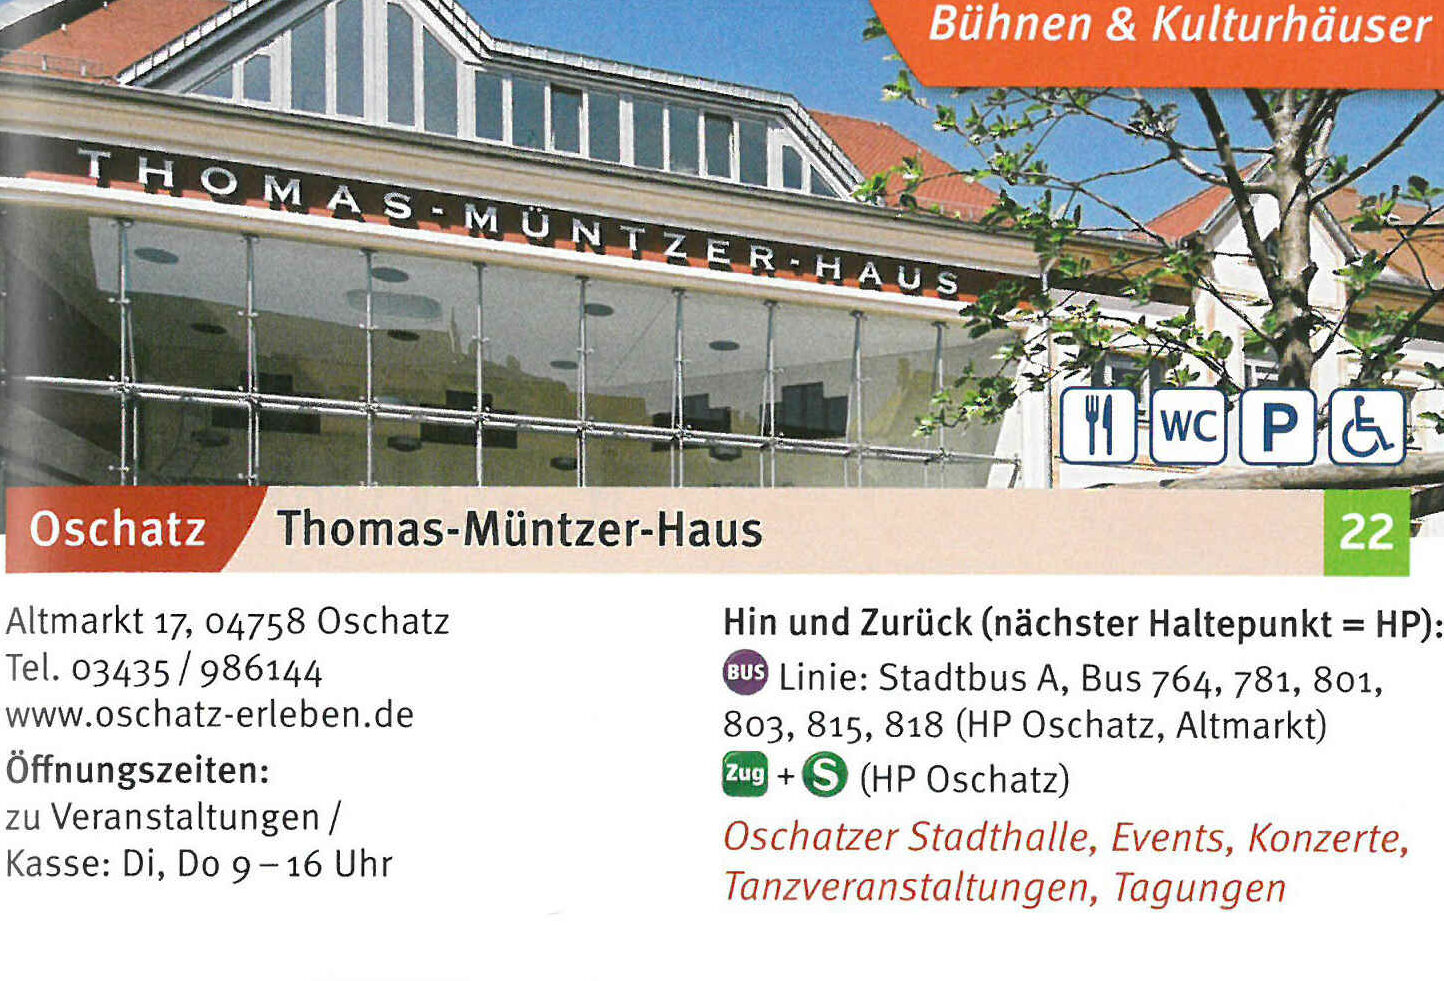 Thomas-Müntzer-Haus: Oschatzer Stadthalle, Events, Konzerte, Tanzveranstaltungen, Tagungen